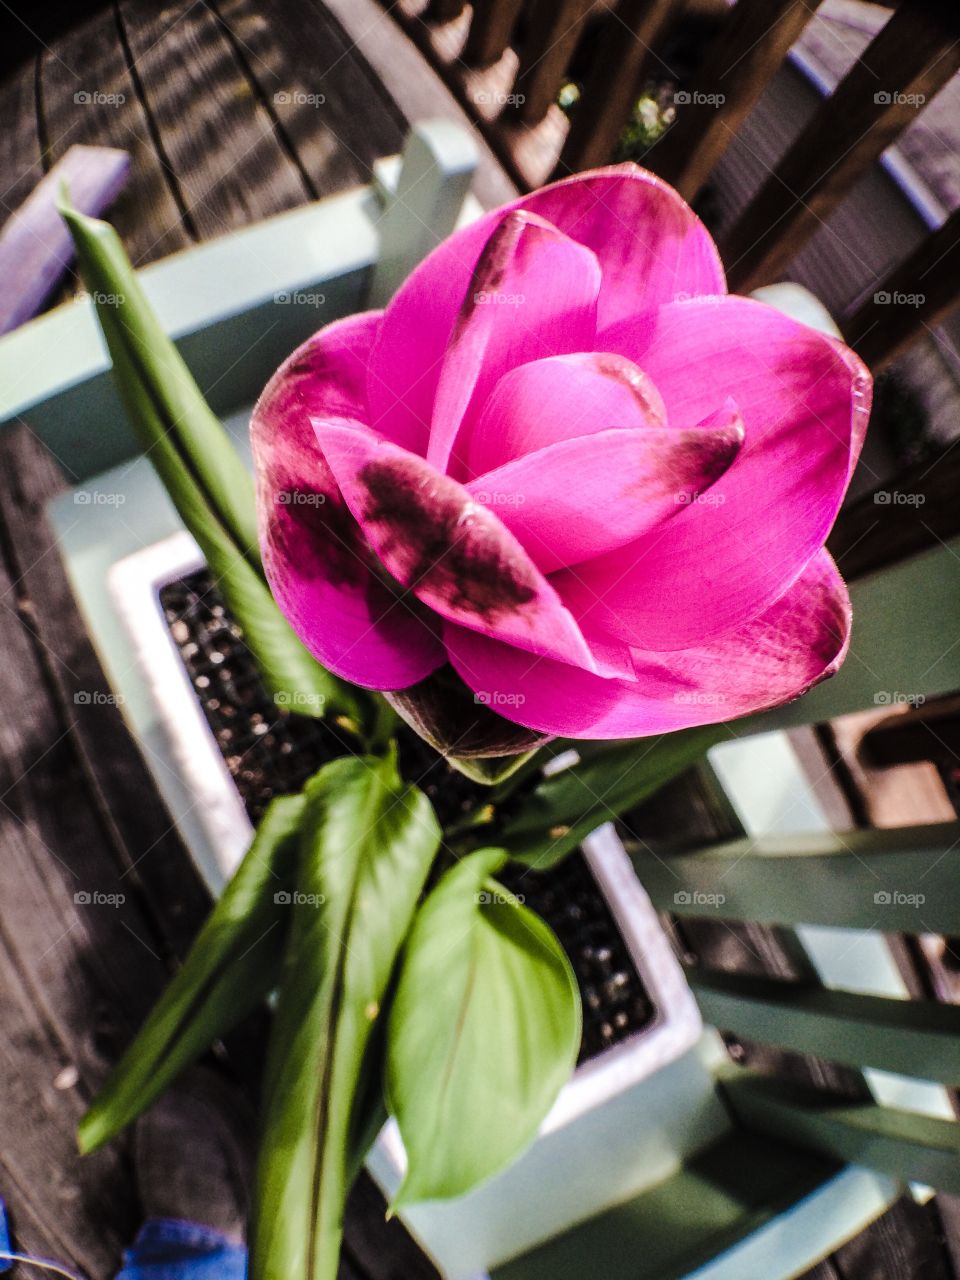 Siam tulip on display. 